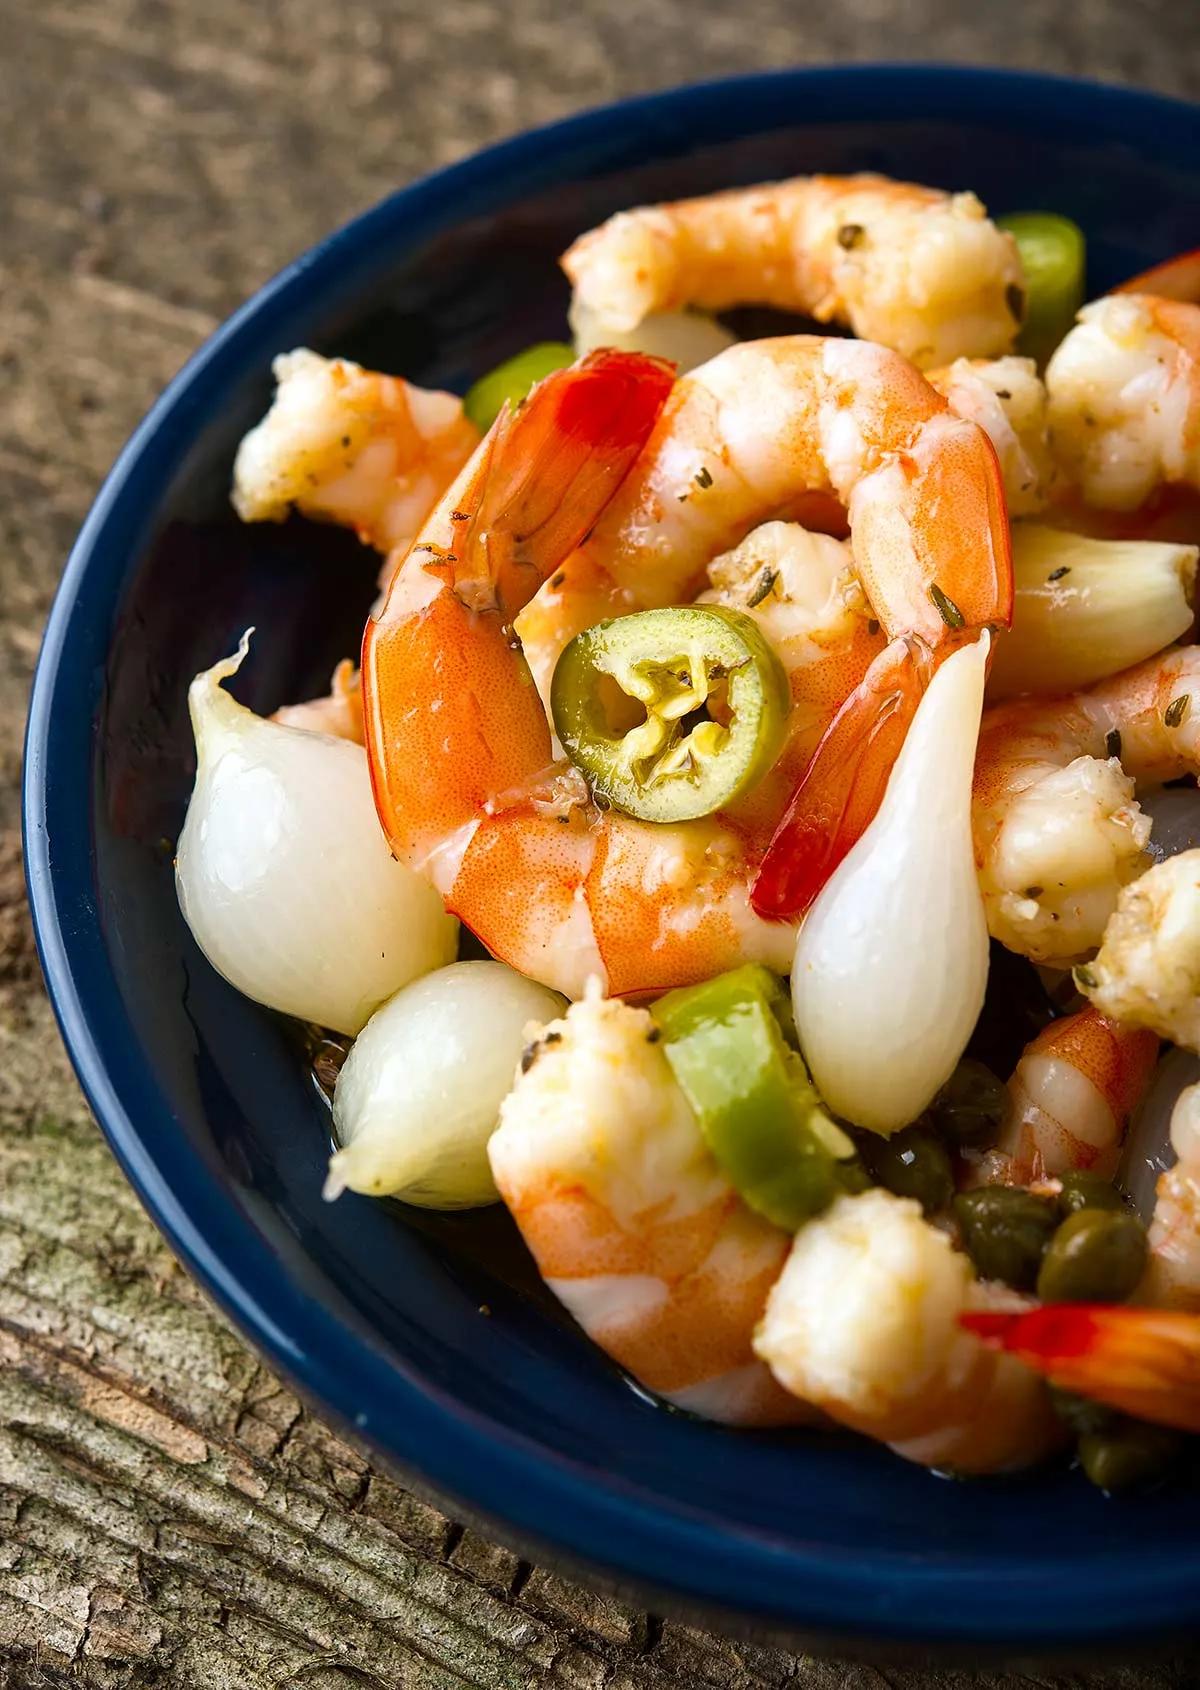 Pickled Shrimp Recipe - How to Make Pickled Shrimp | Hank Shaw